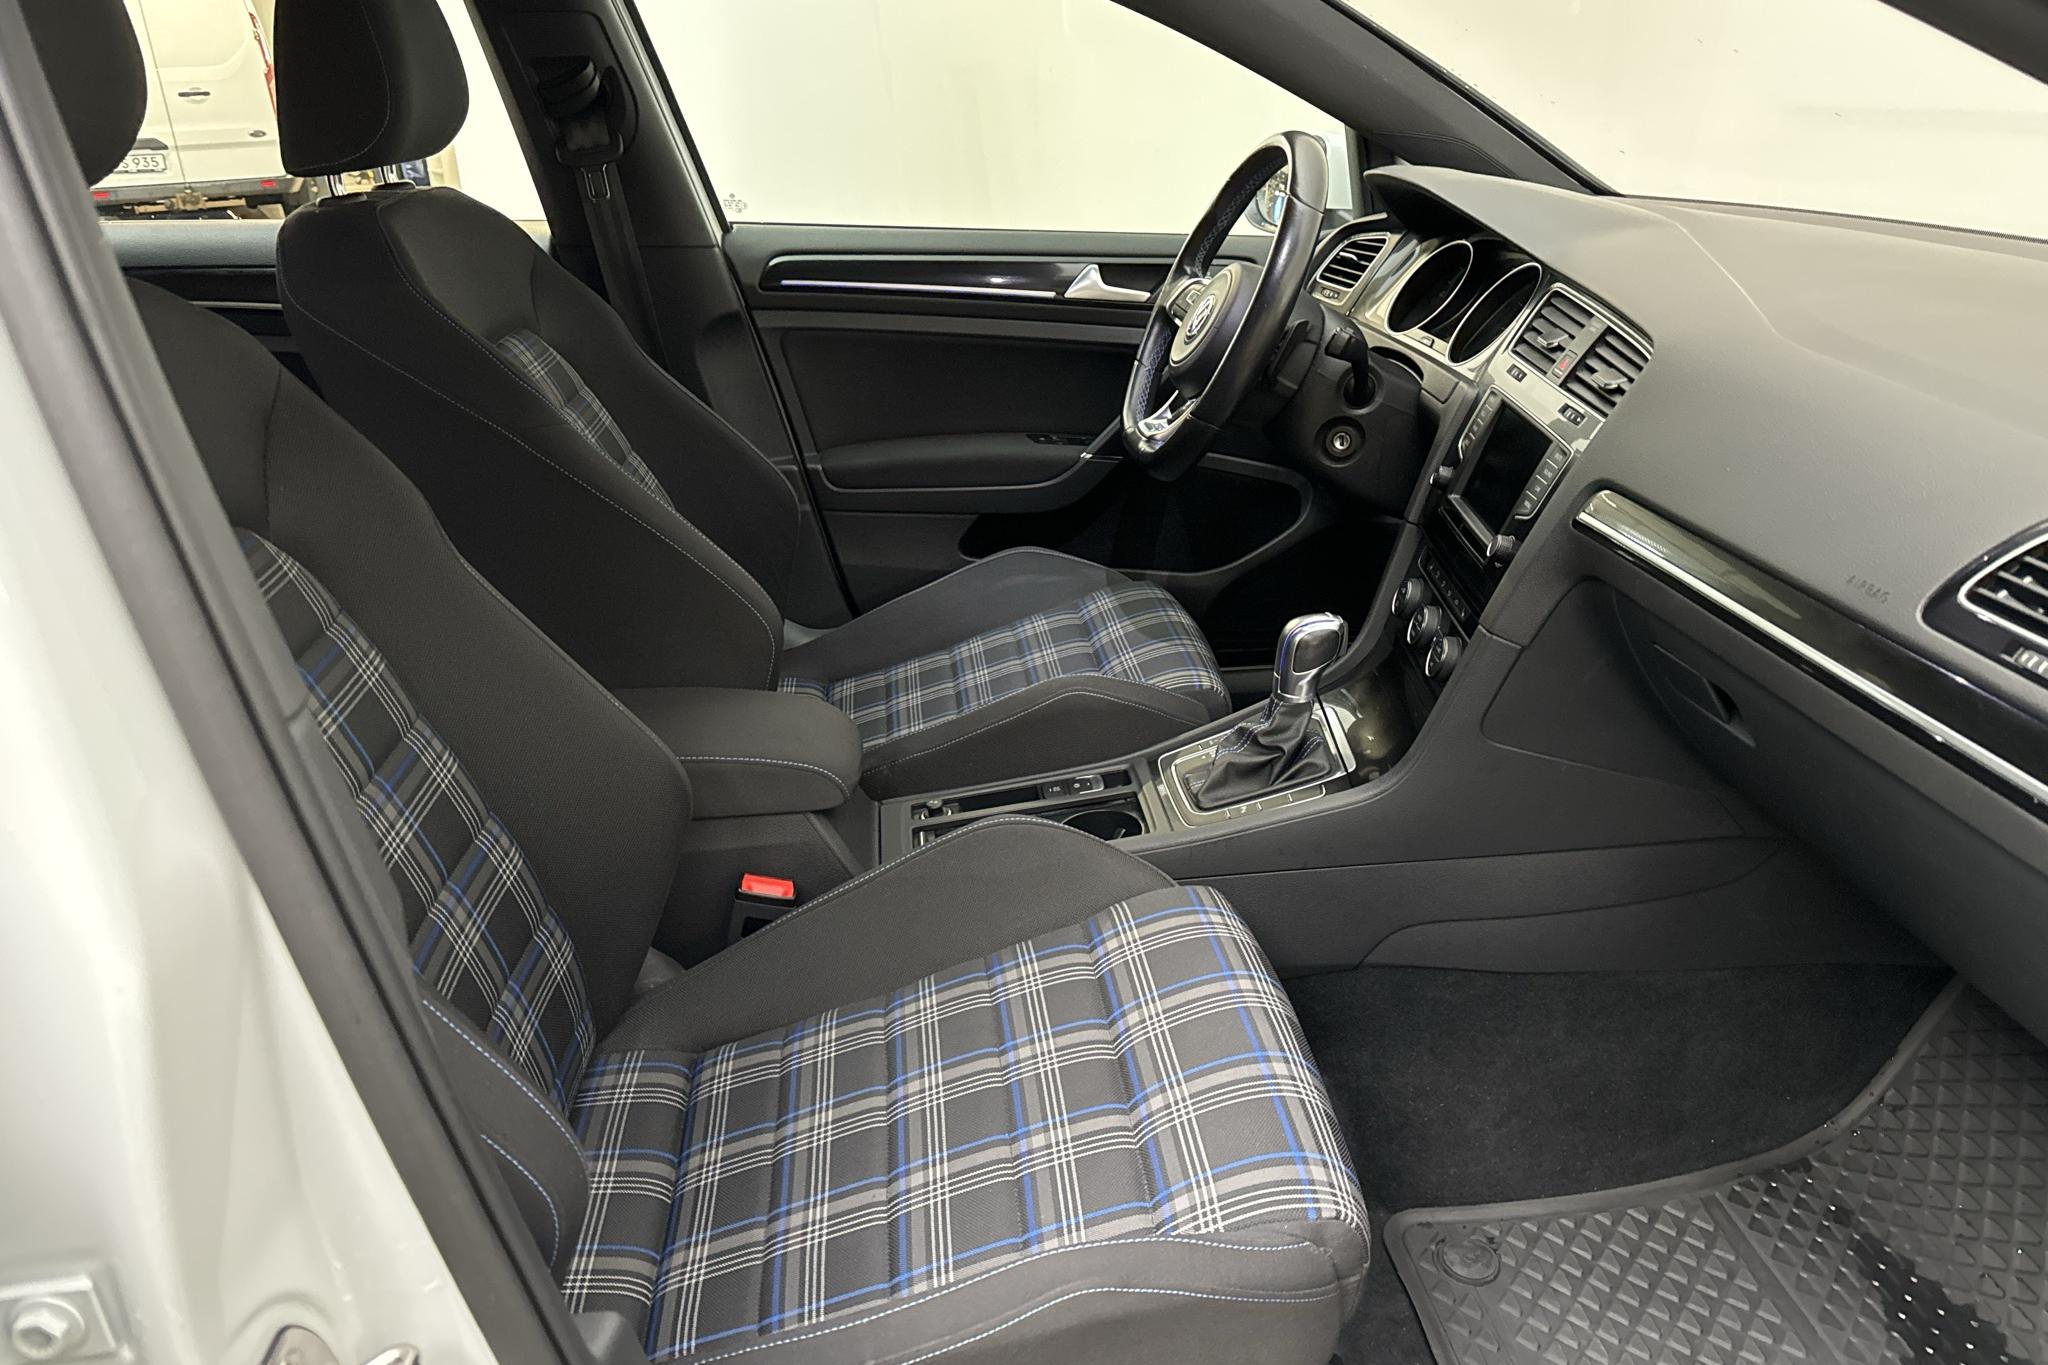 VW Golf VII GTE 5dr (204hk) - 10 519 mil - Automat - vit - 2017